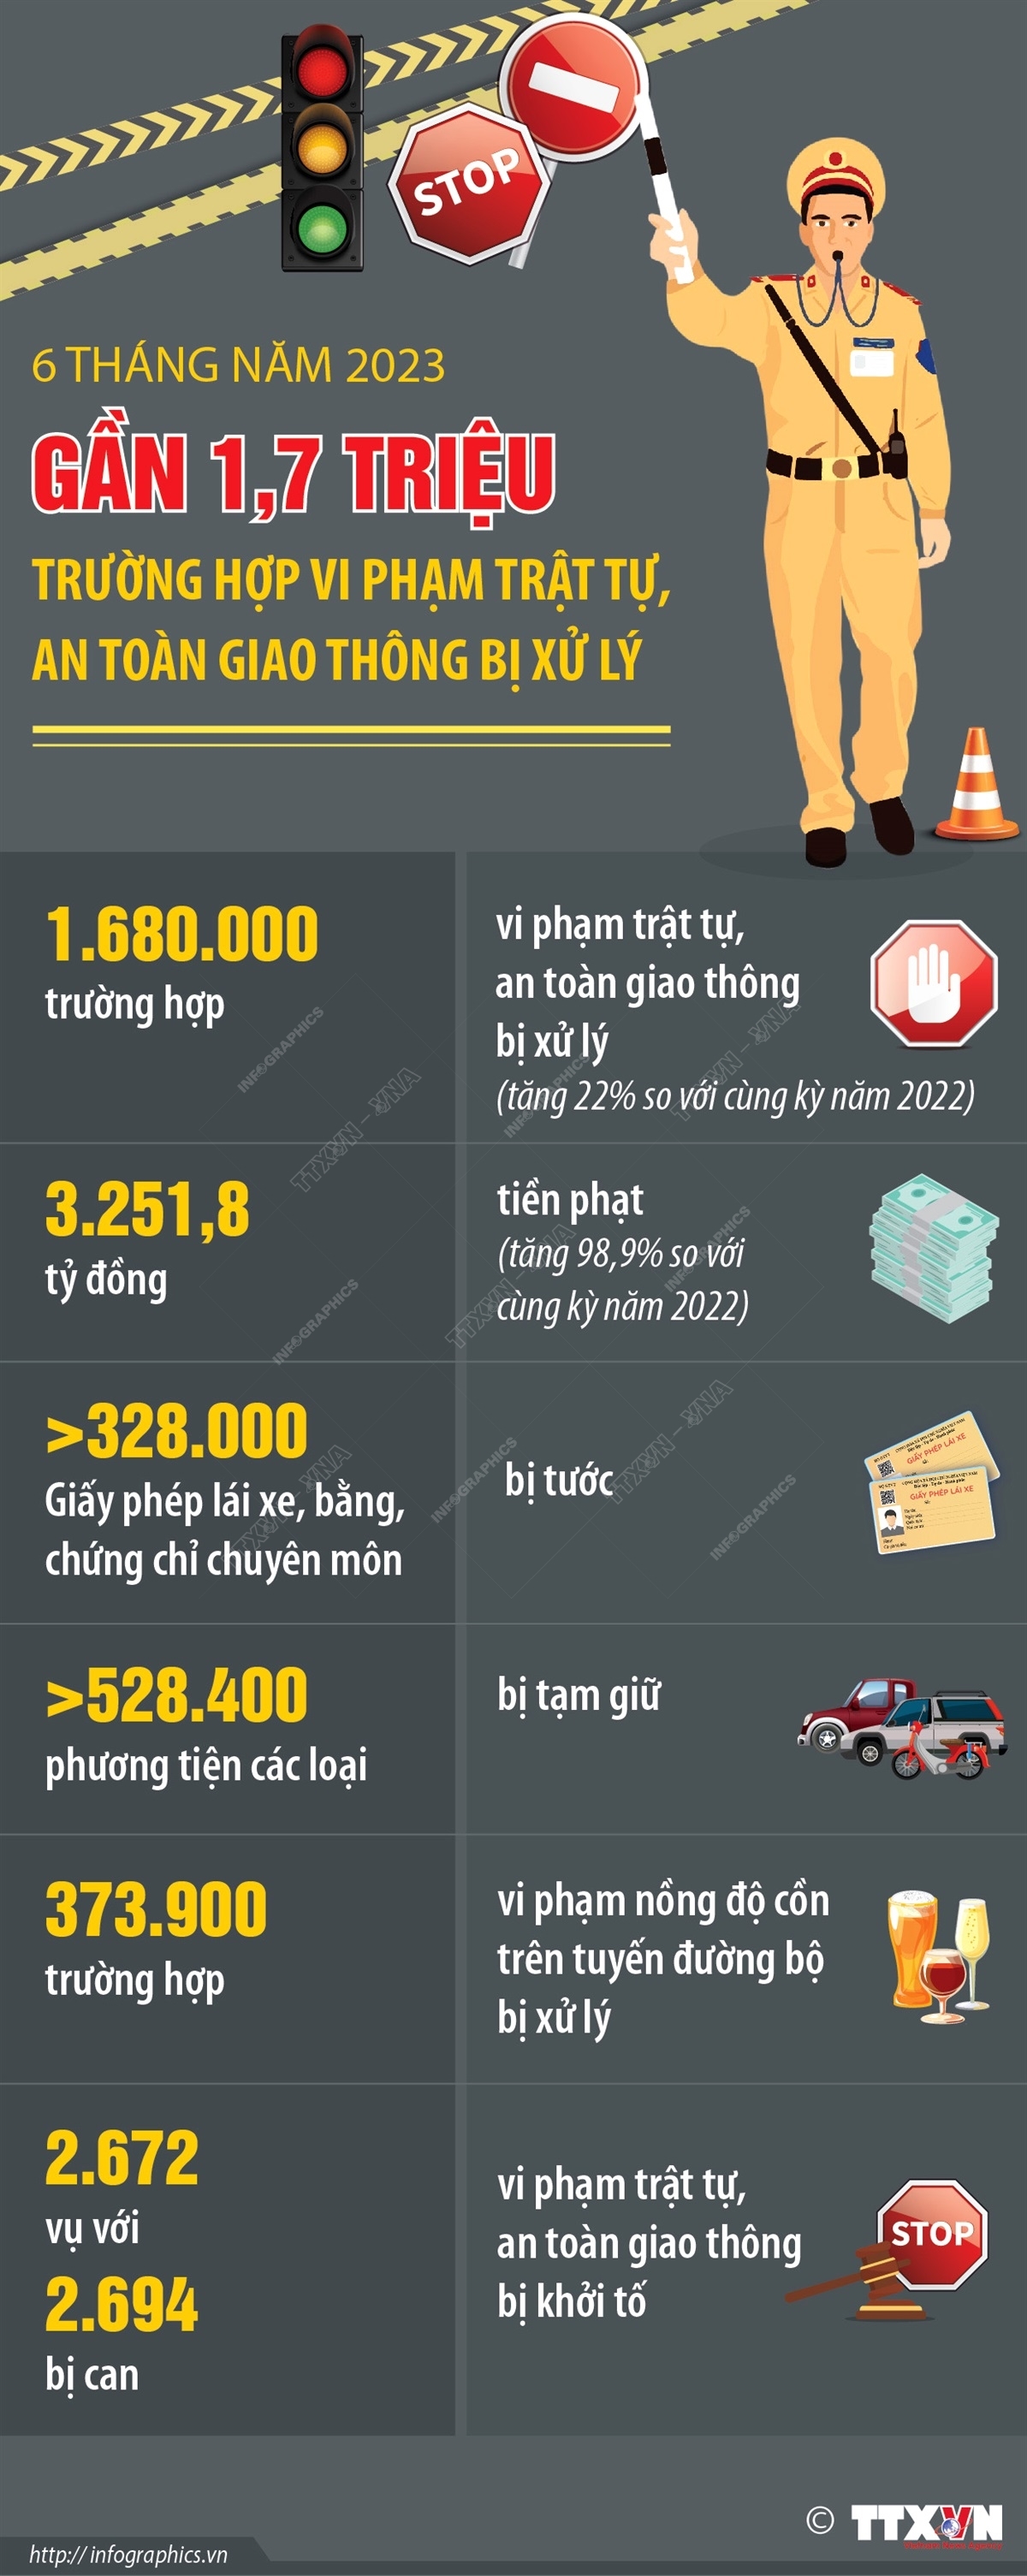 6 tháng năm 2023: Trên 1,68 triệu trường hợp vi phạm trật tự, an toàn giao thông bị xử lý